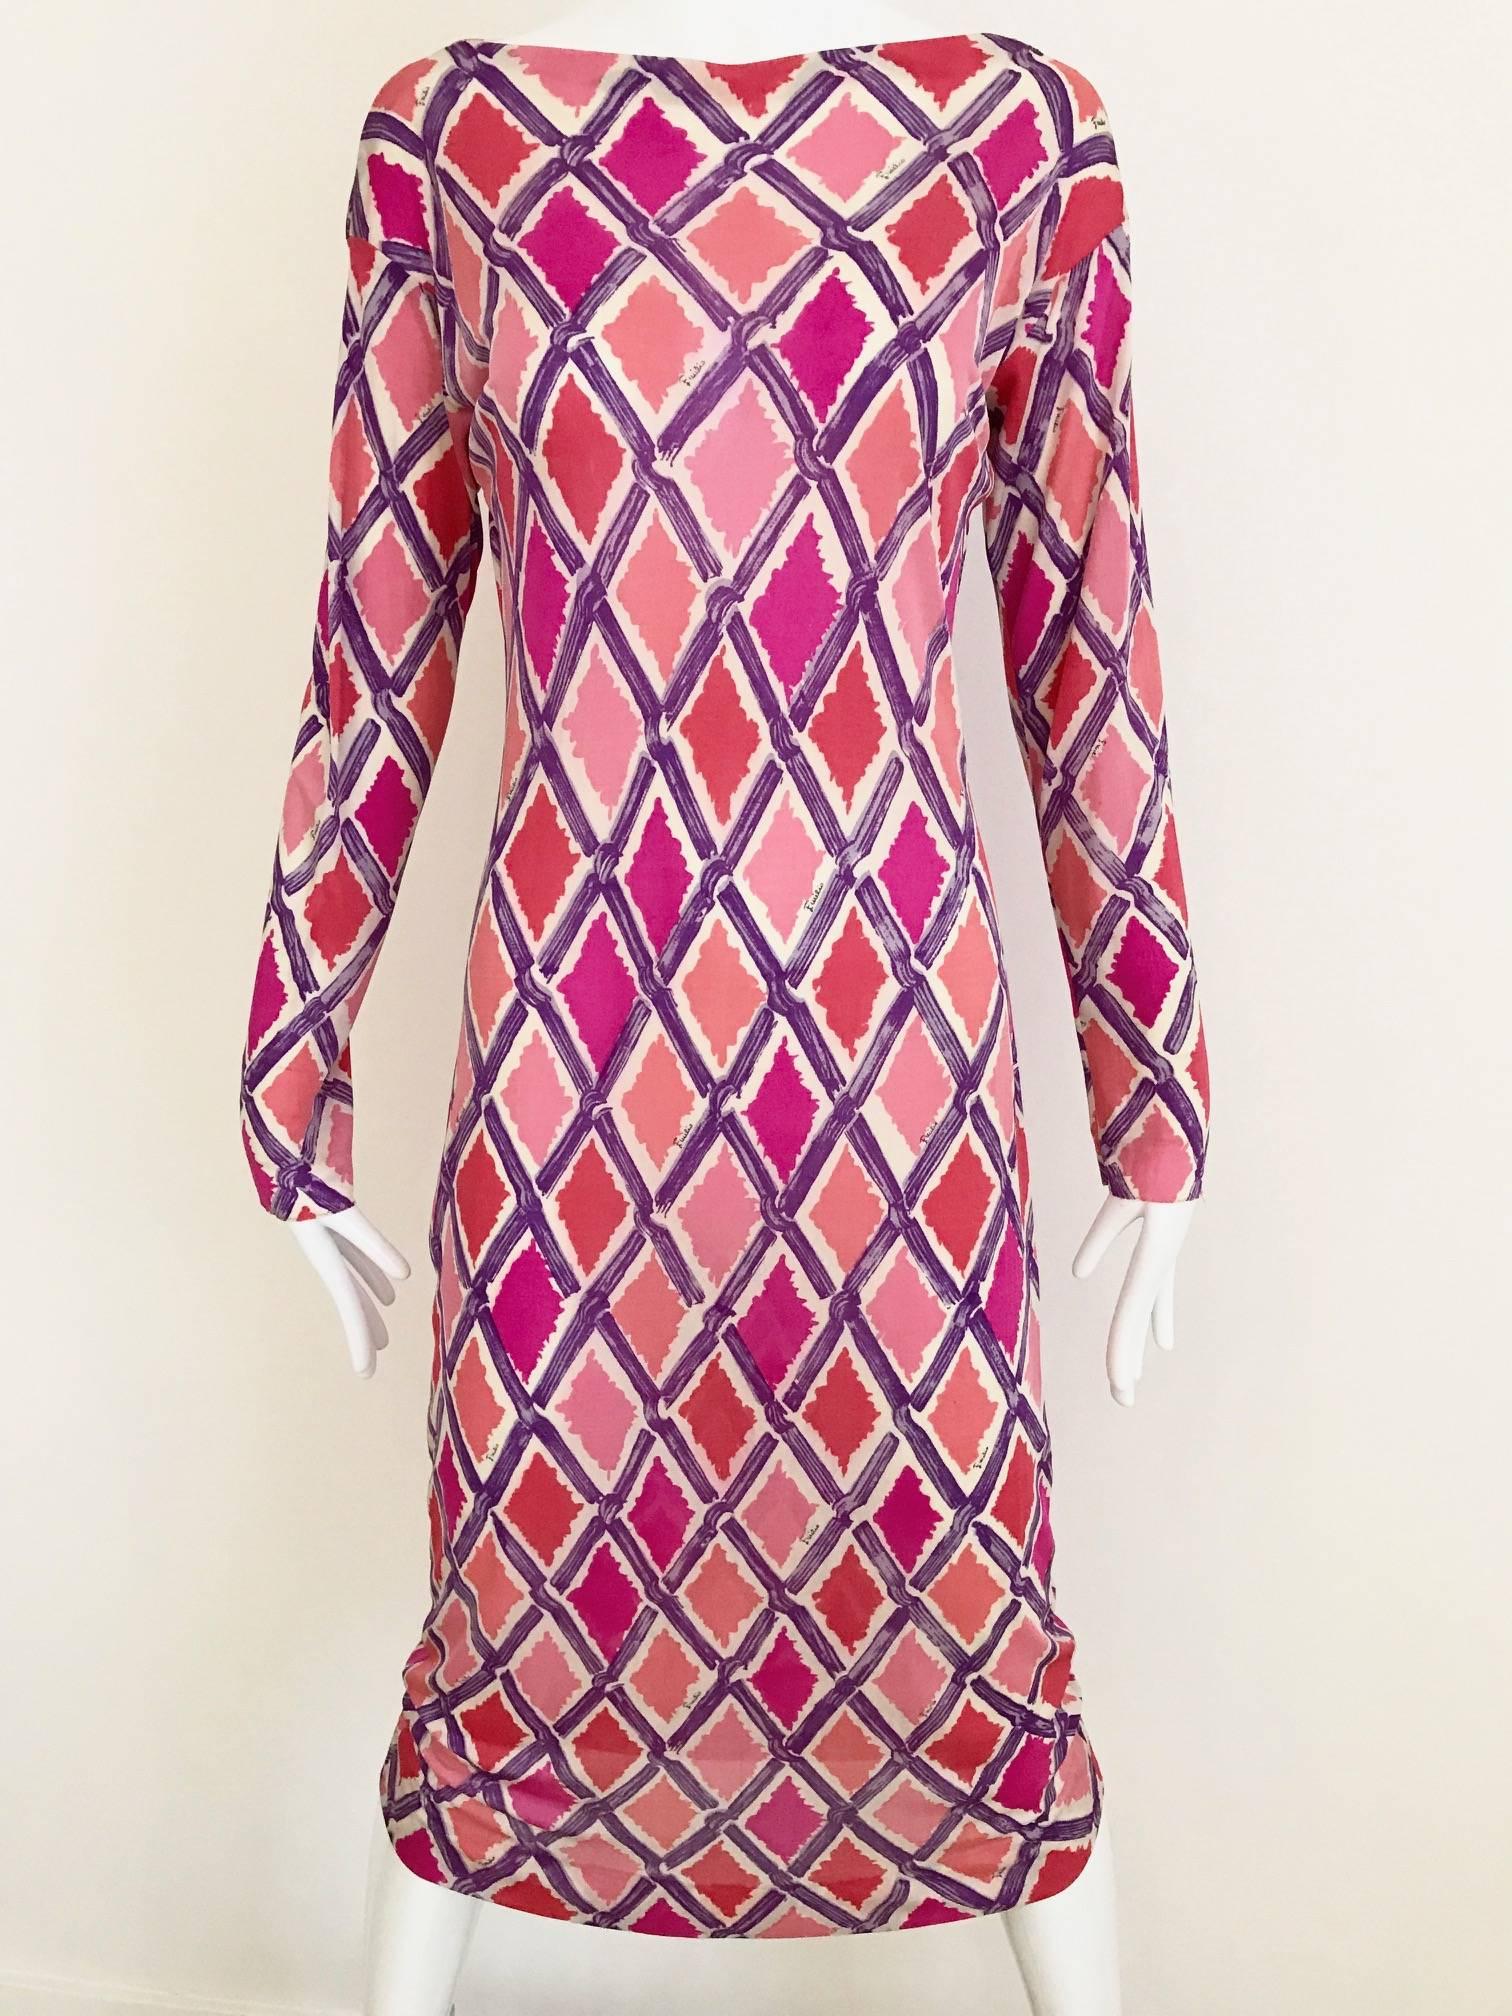 Vintage 1960s PUCCI Geometric Diamond Shape Print weiche Seide Jersey Kleid lebendige fuschia, rosa, lila und Koralle. Slip on Kleid (kein Reißverschluss) 
Passform Größe: 2/4 Small - Medium
Oberweite: 32 Zoll bis 36 Zoll. / Hüfte: 36 Zoll
***